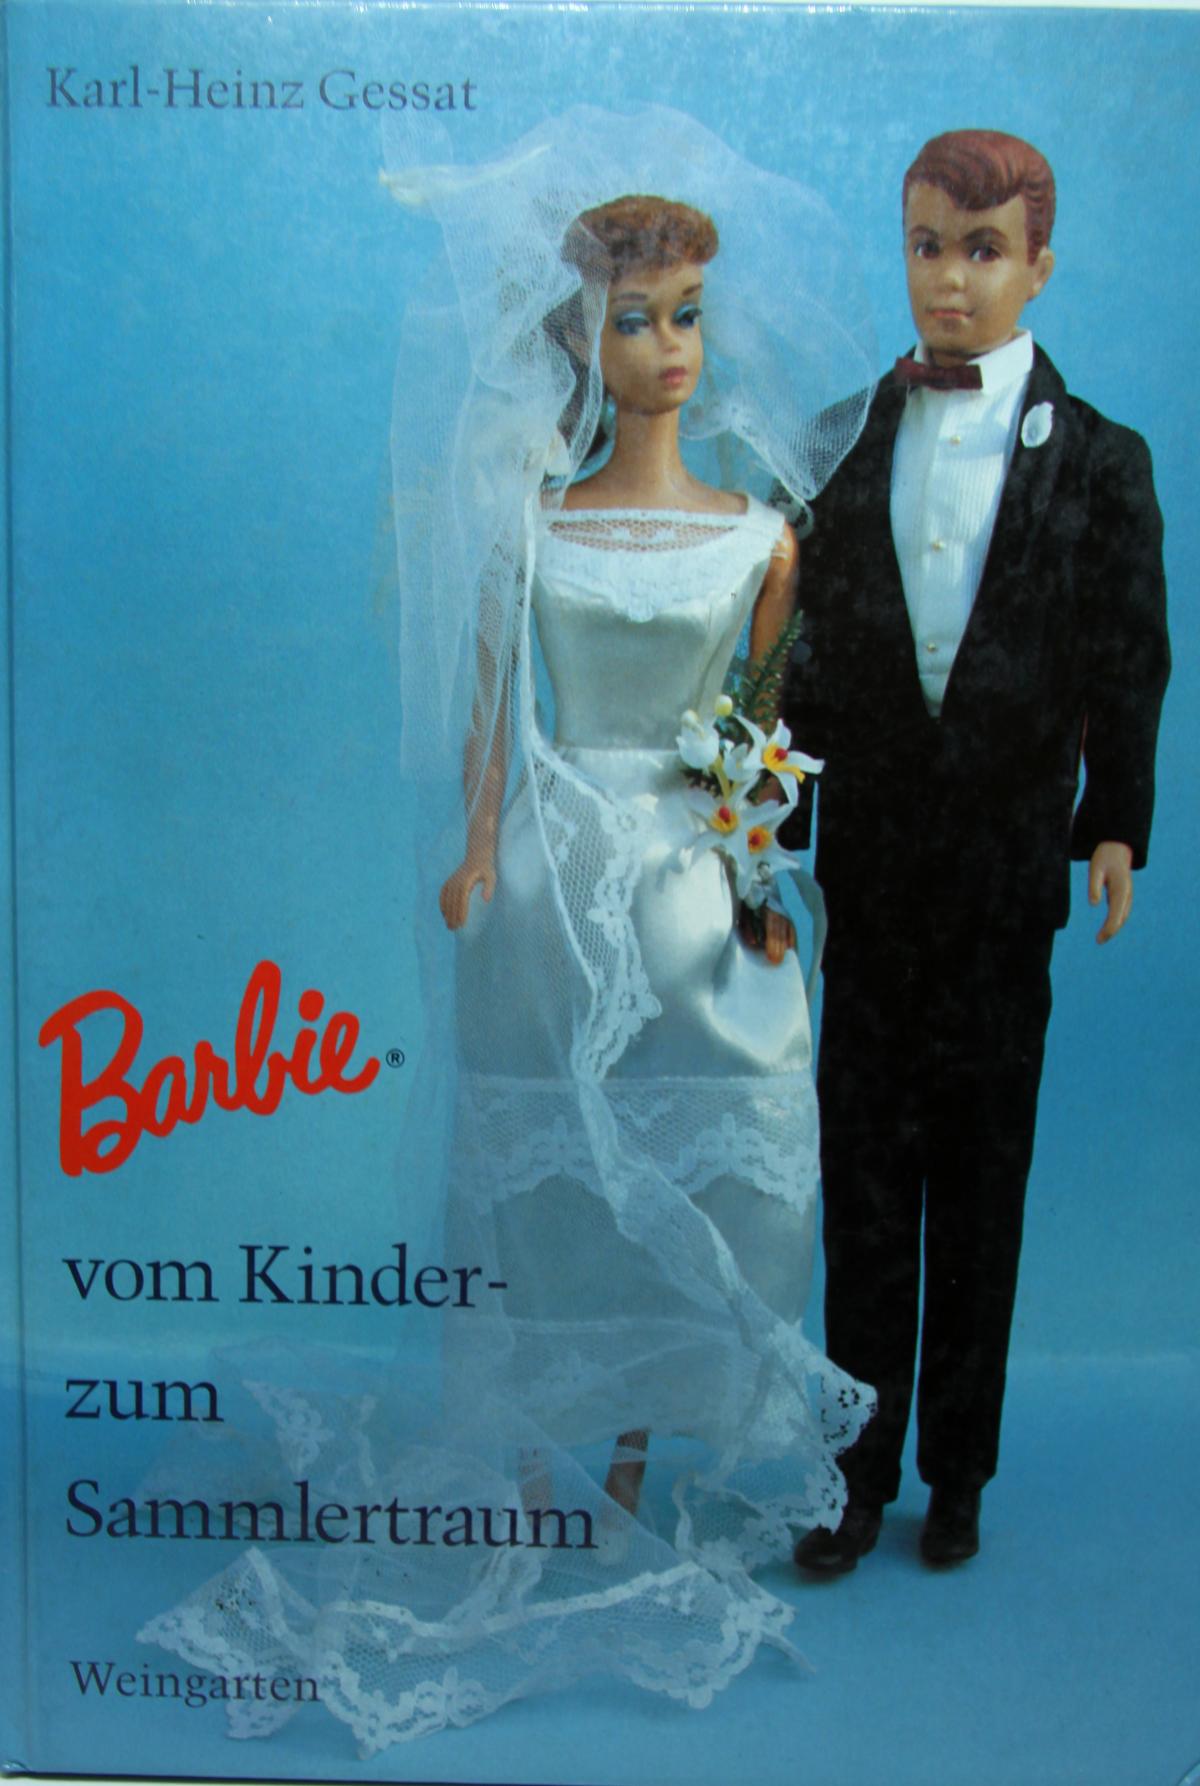 Buch "Barbie" vom Kinder- zum Sammlertraum K.-H. Gessat, Verlag Weingarten